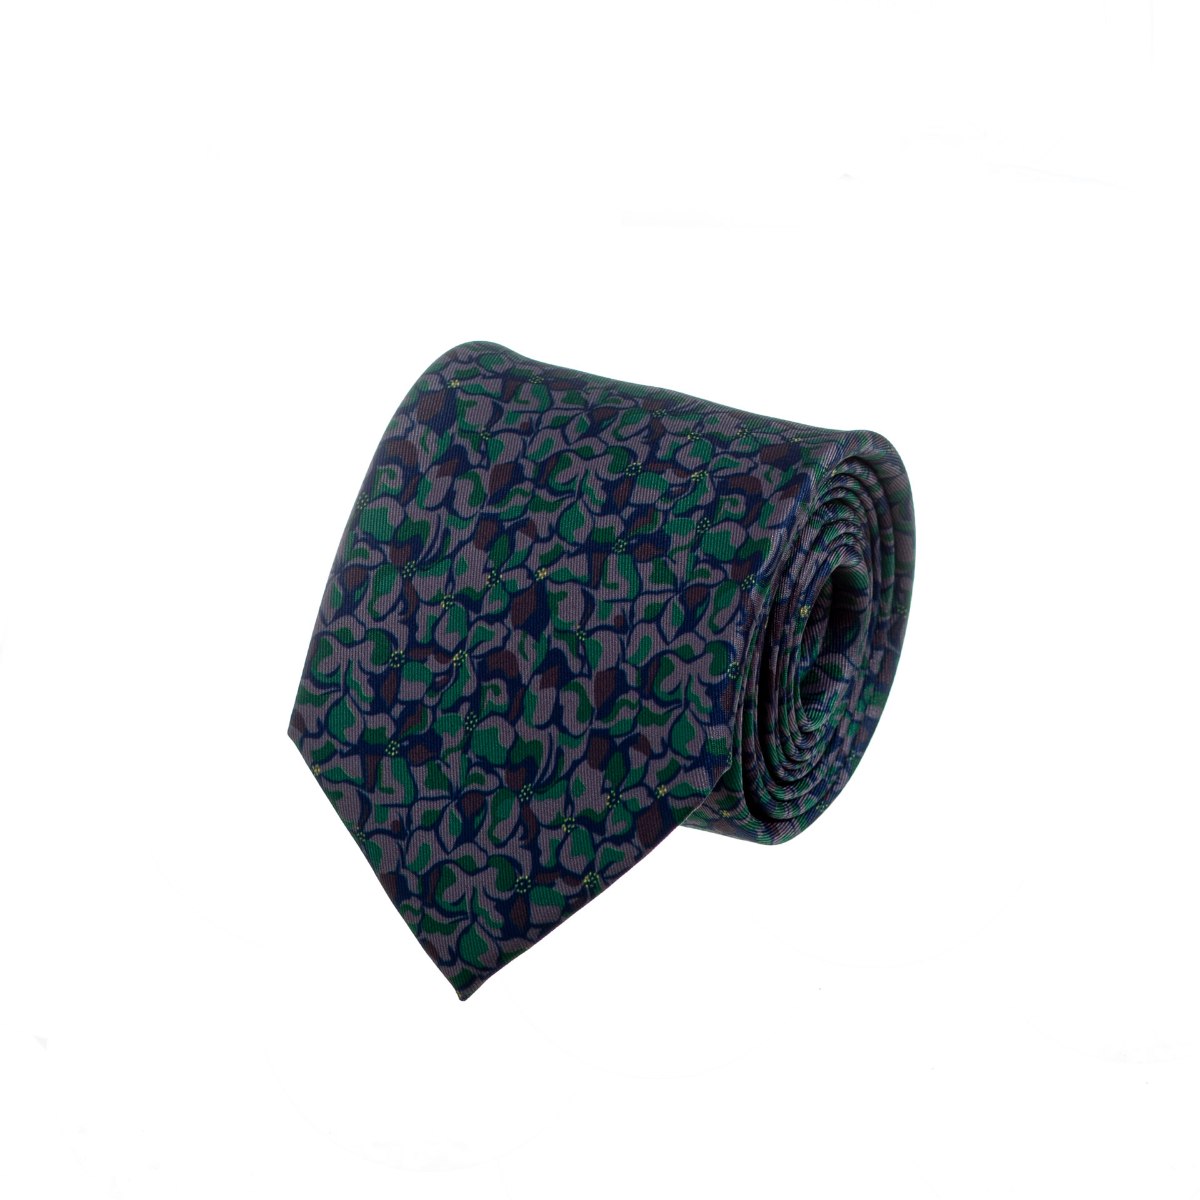 עניבה בהדפס כתמים ירוק - חום